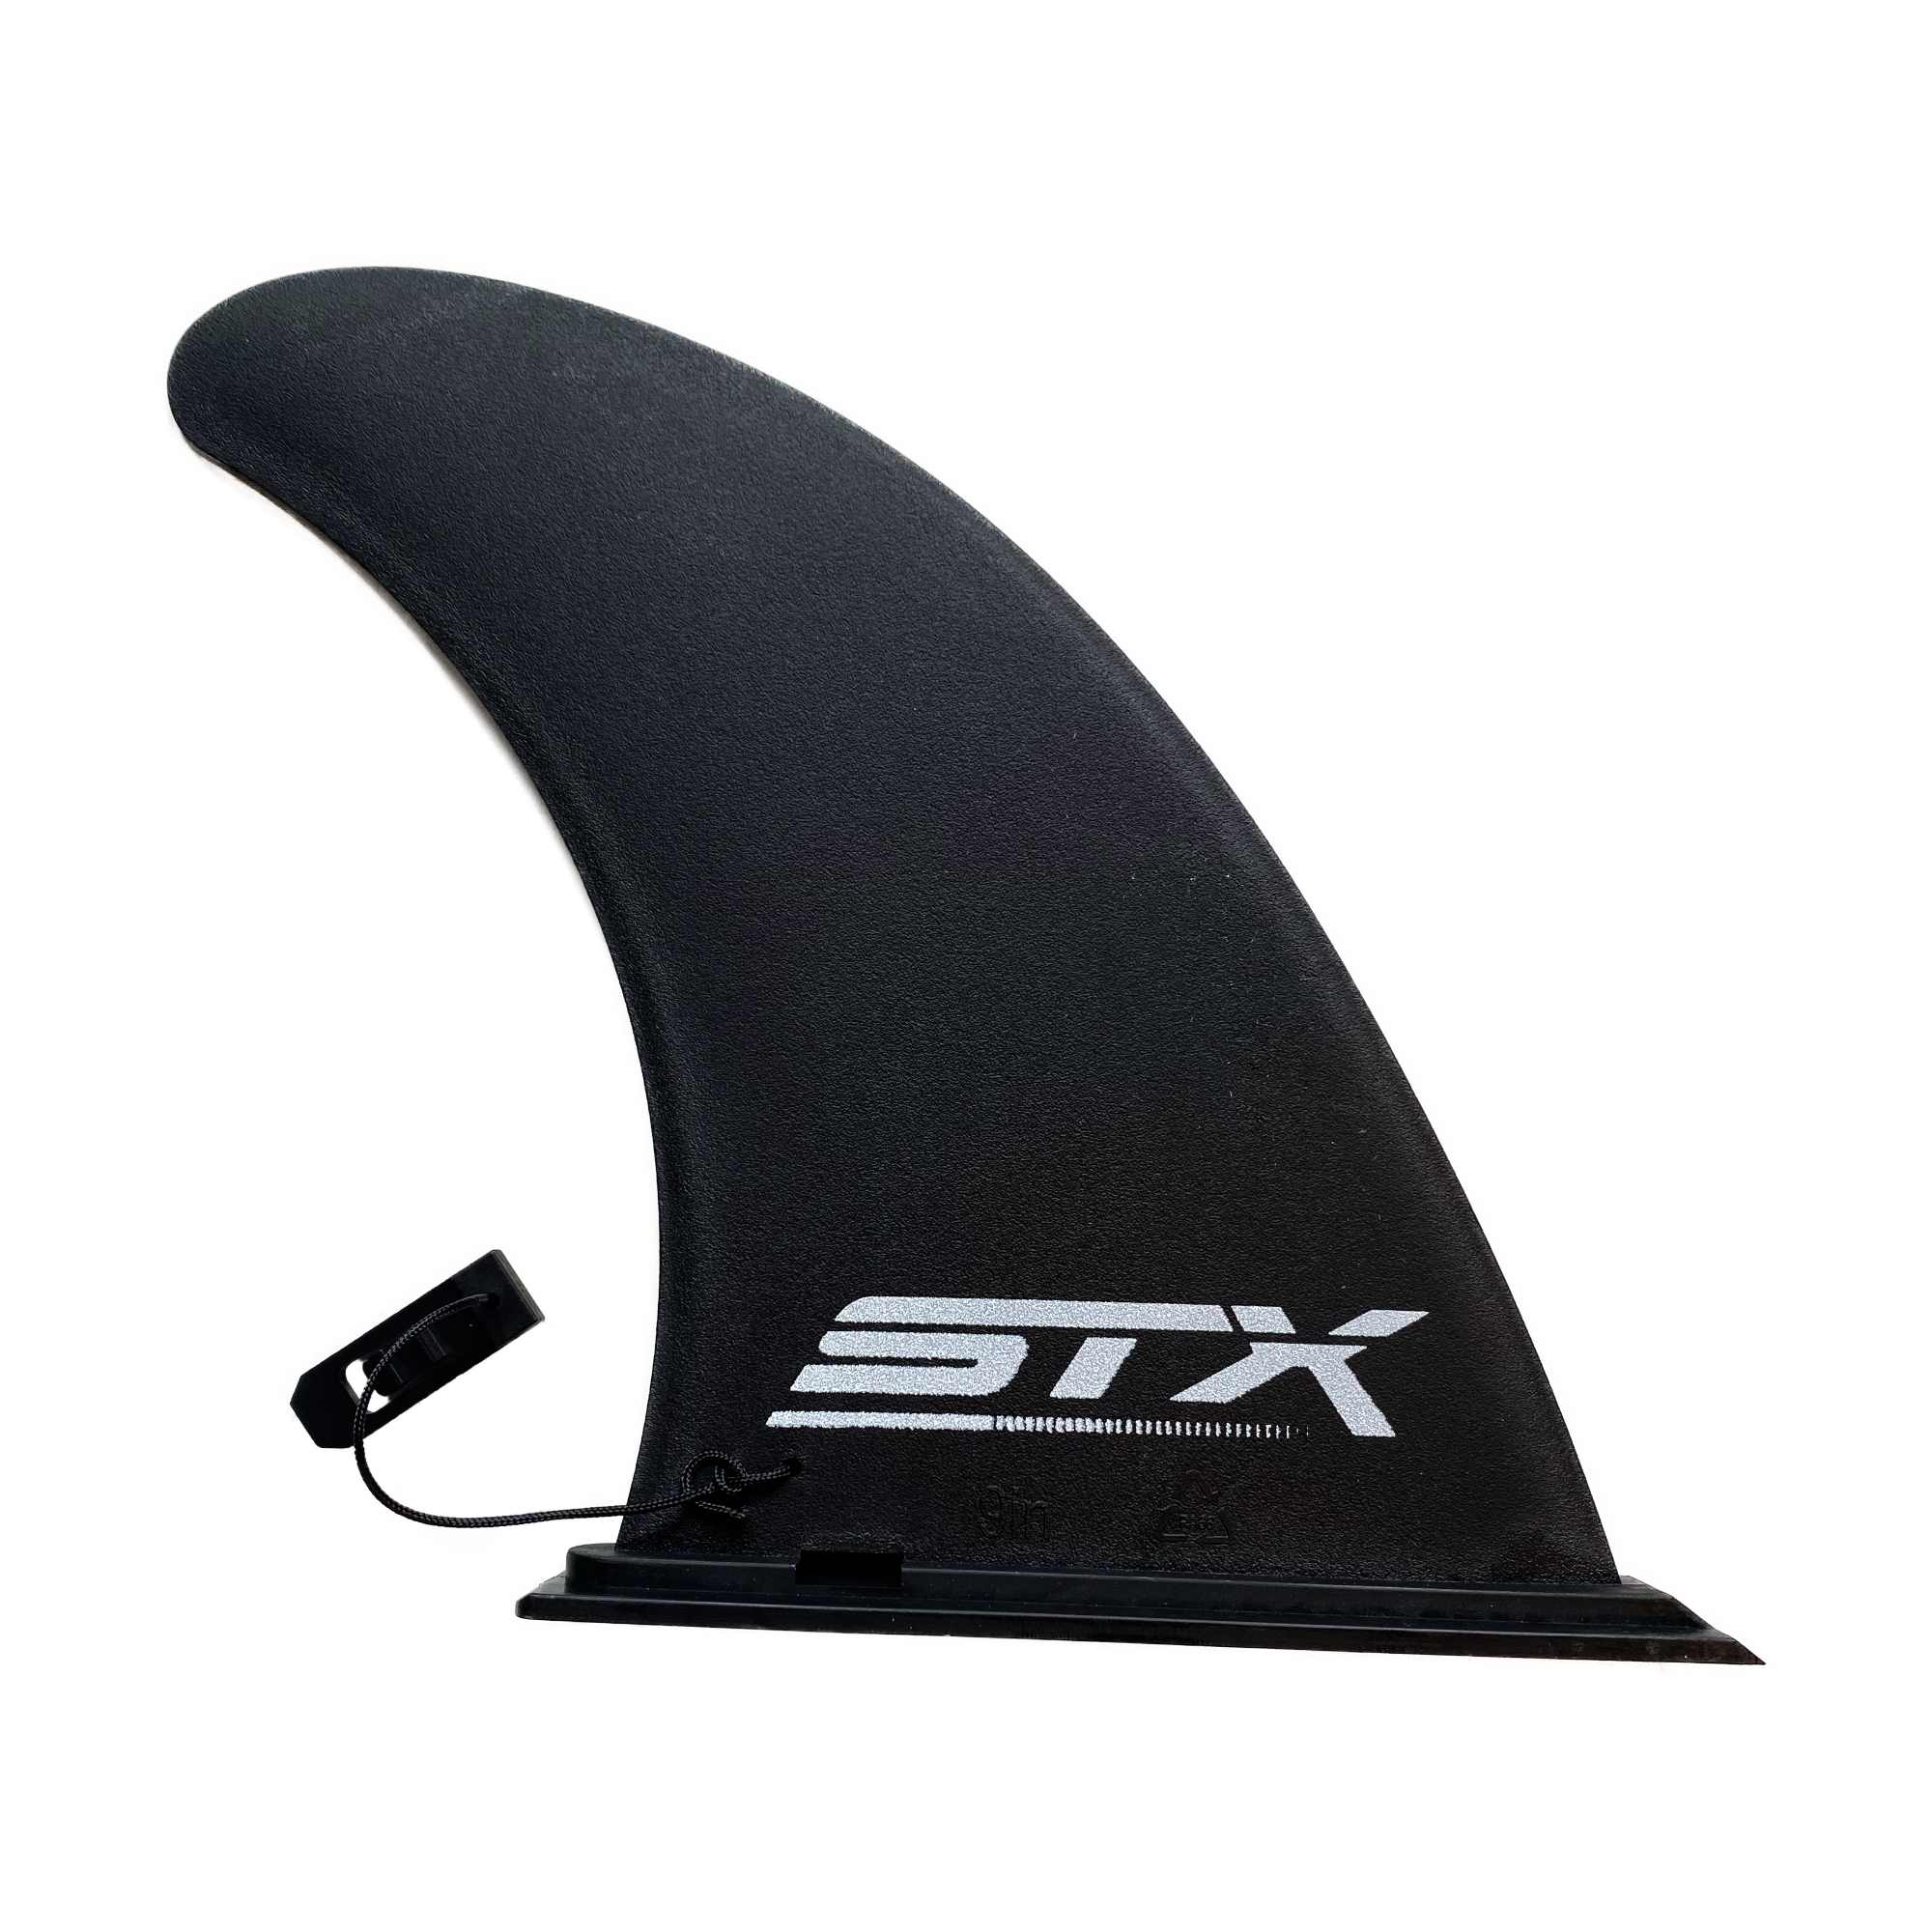 STX iSup Slide in Finne